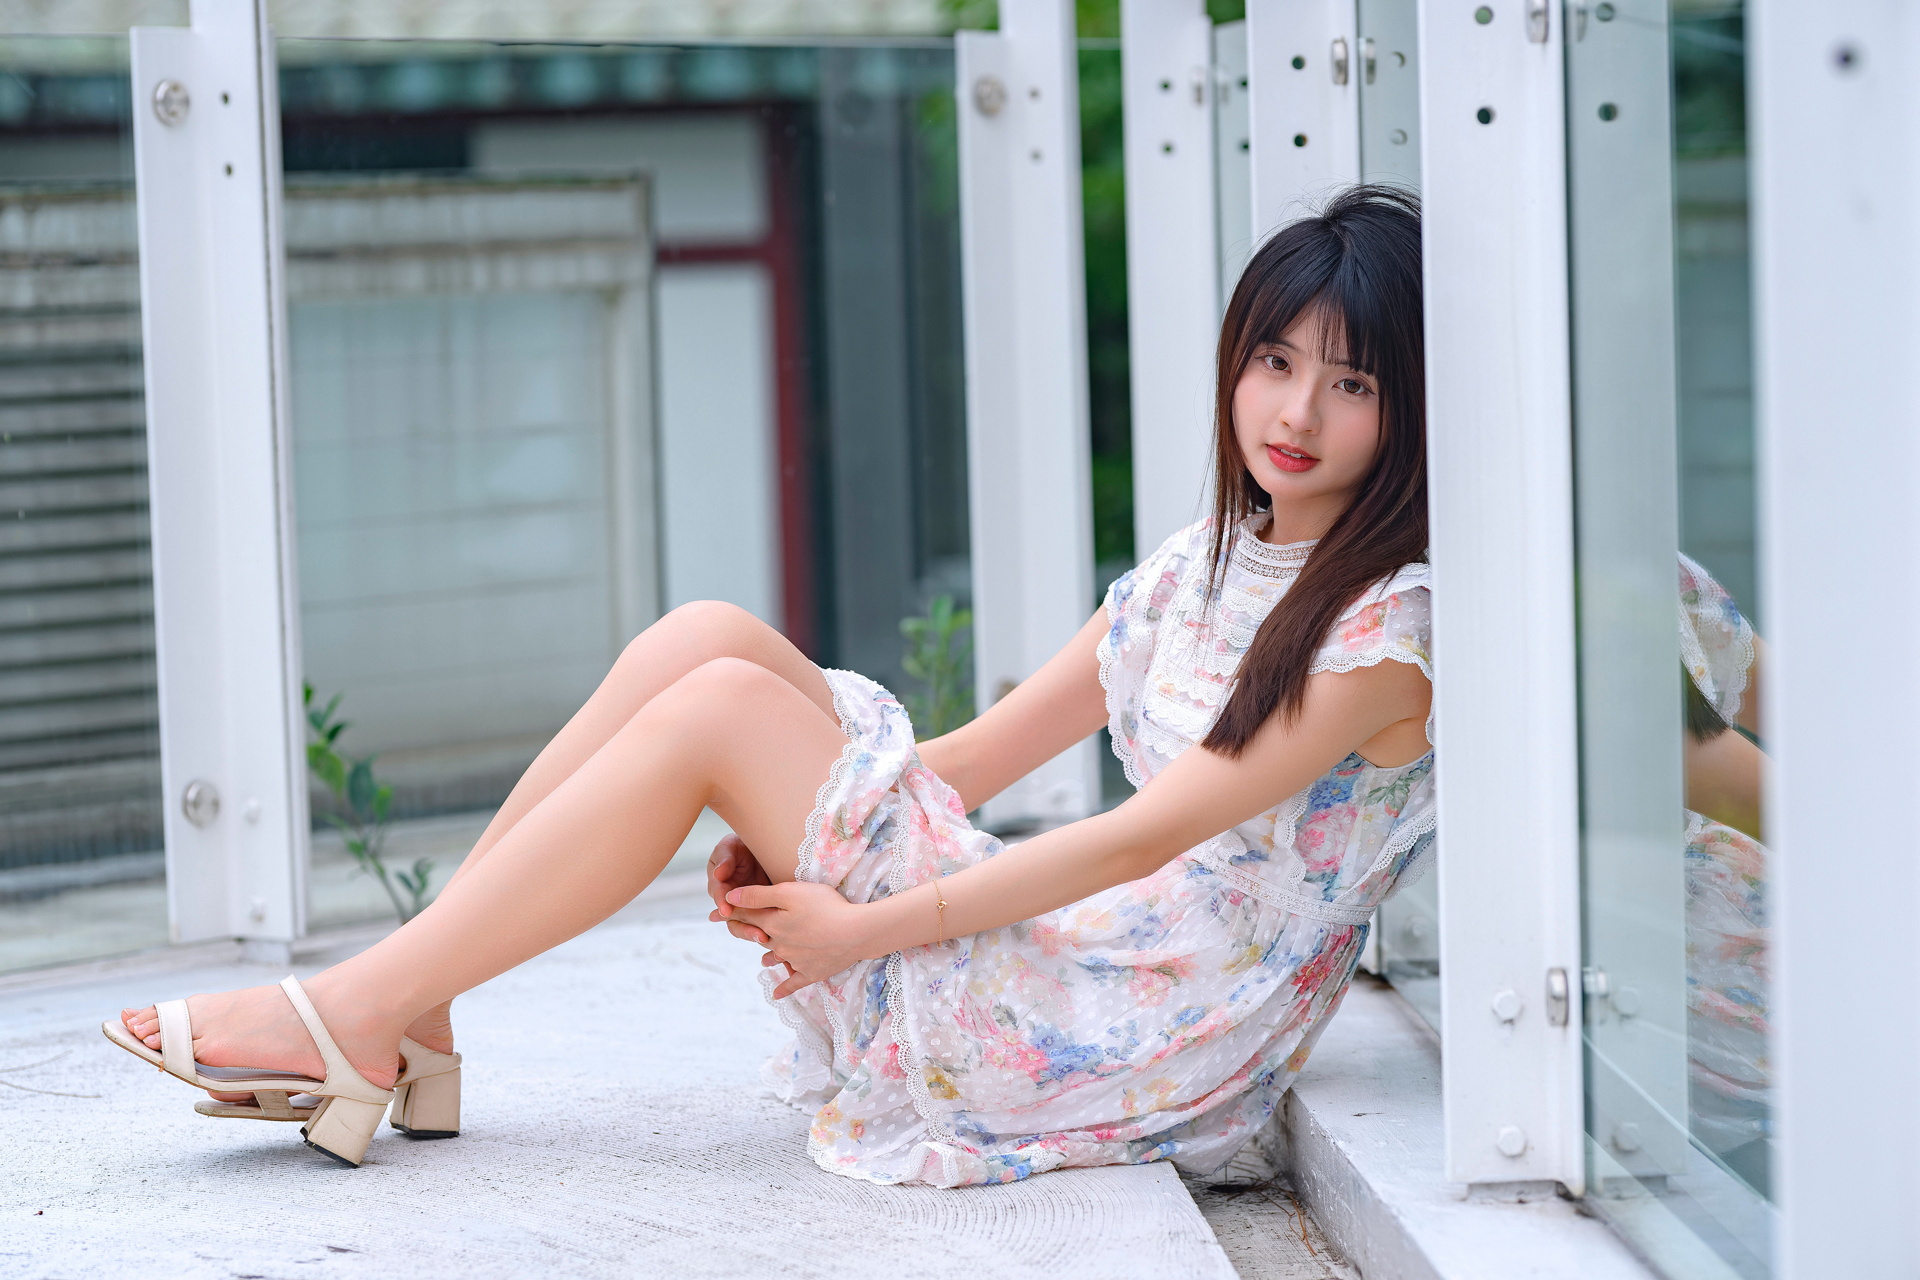 Asian Model Women Long Hair Dark Hair Sitting Barefoot Sandal 1920x1280